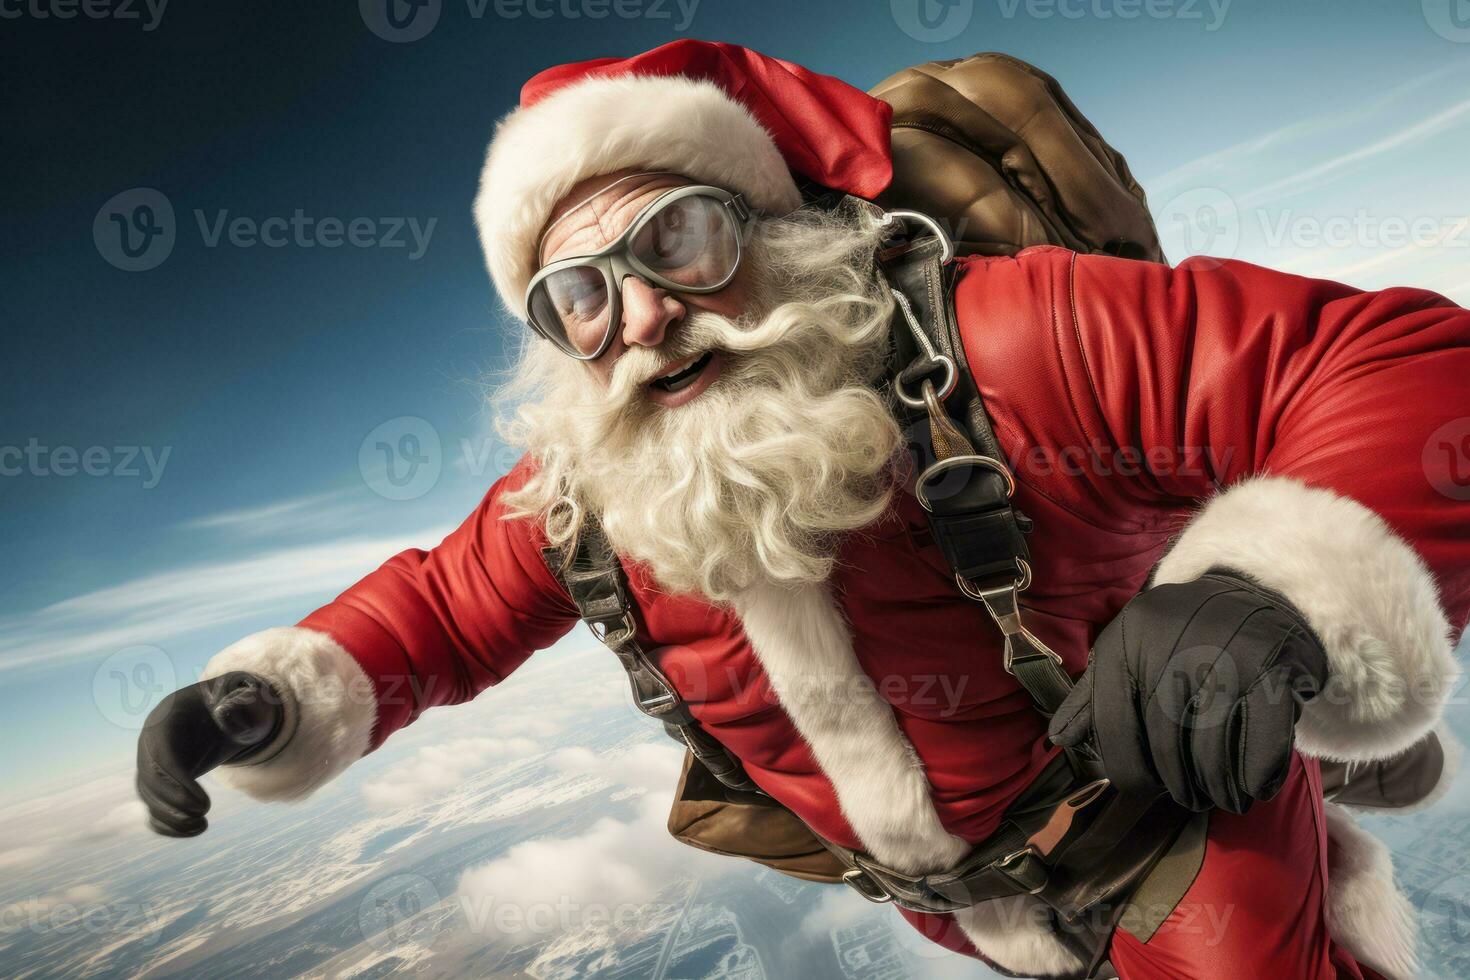 Santa claus springen von ein Flugzeug mit ein Fallschirm, demonstrieren seine furchtlos Ansatz zu extrem Sport. foto